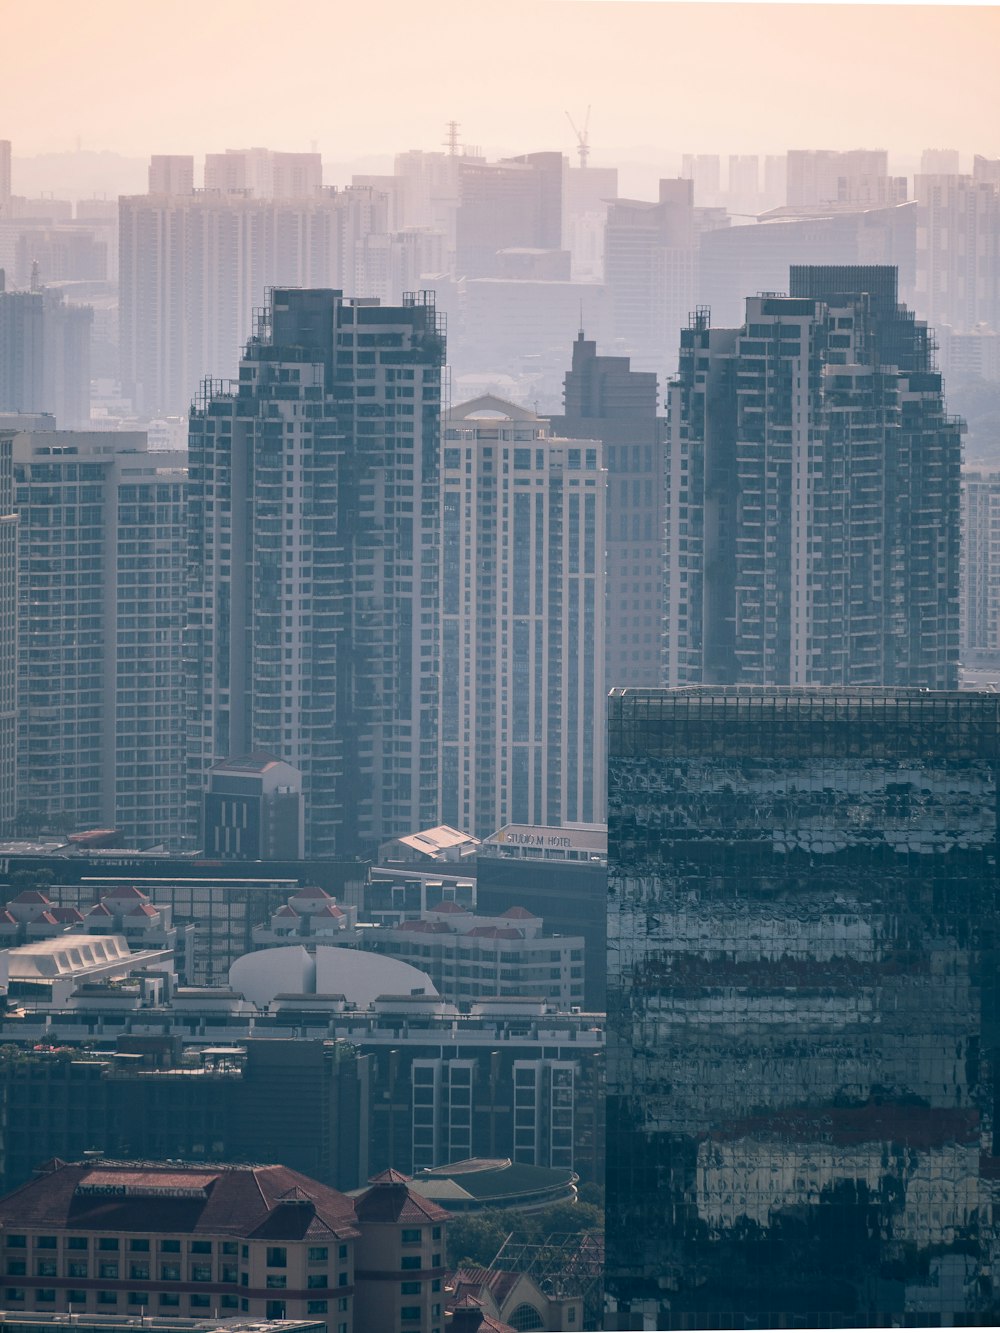 회색조 사진으로 보이는 고층 건물